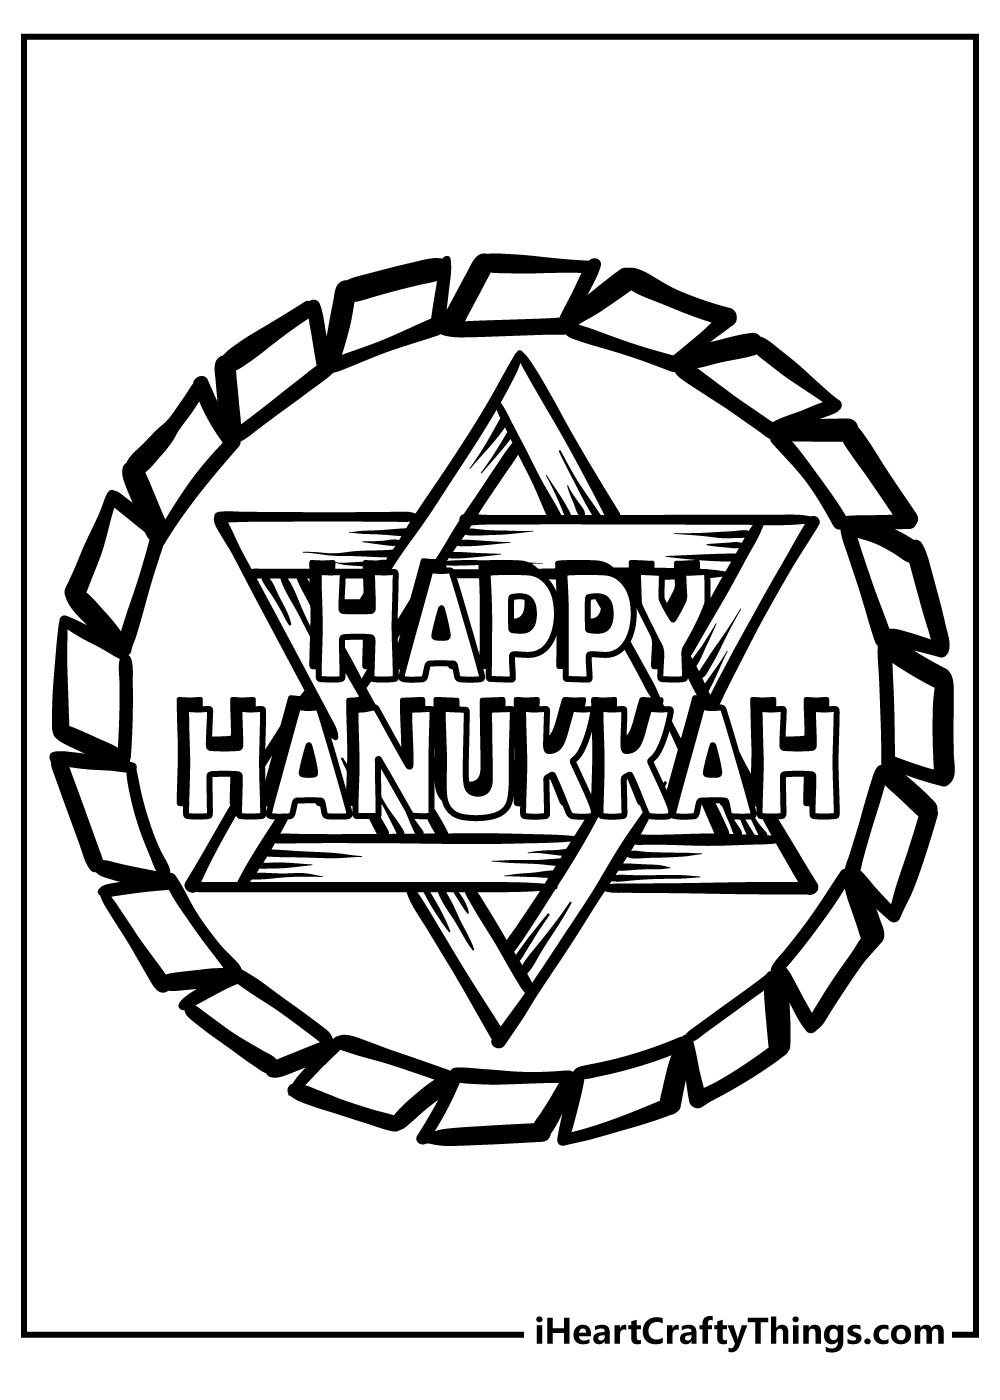 Hanukkah Coloring Book for kids free printable